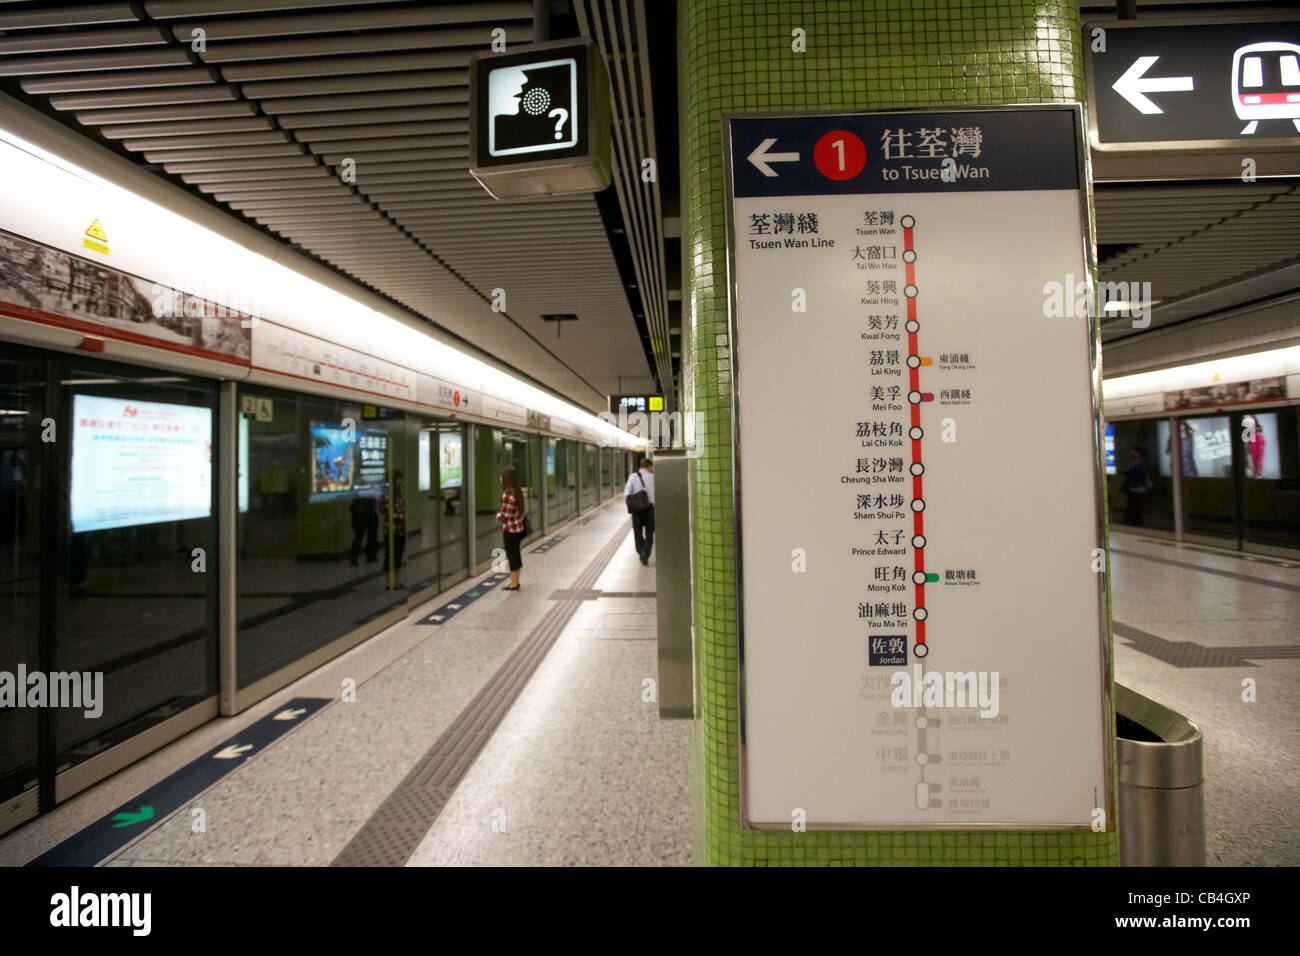 mtr underground station showing tsuen wan line map at ...